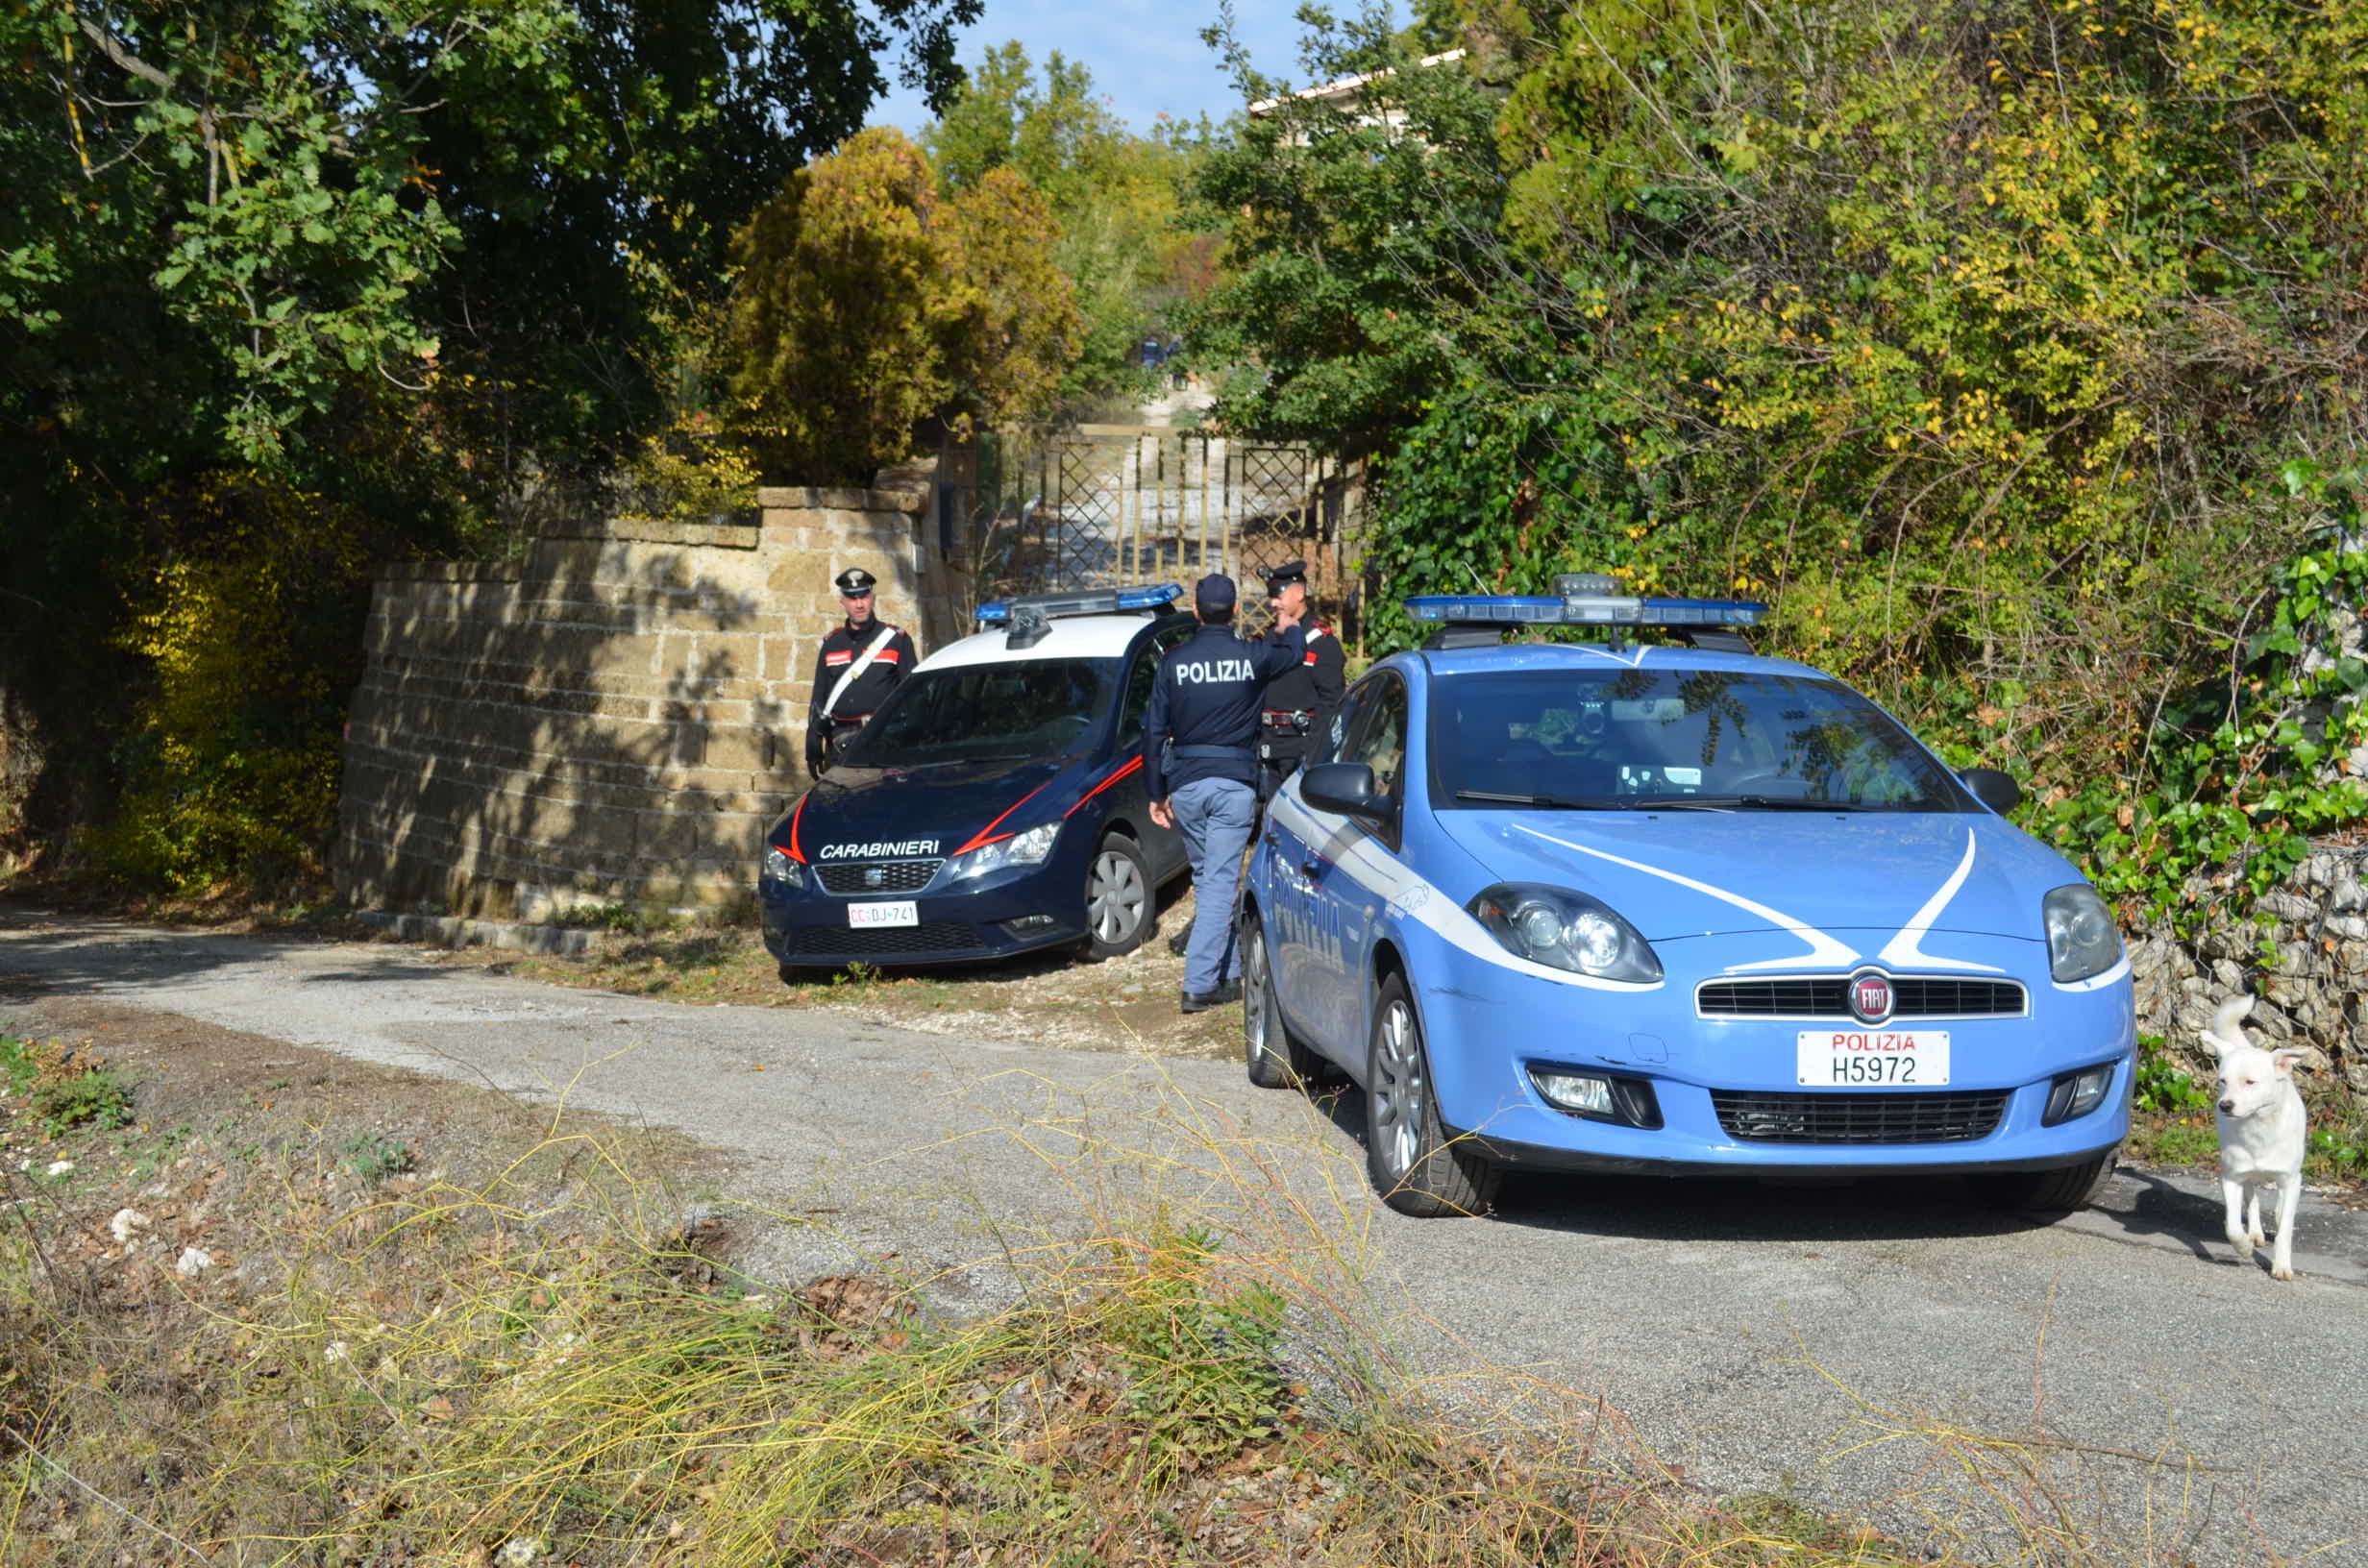 San Giorgio del Sannio| Tentato furto in abitazione, arrestati due ladri rumeni